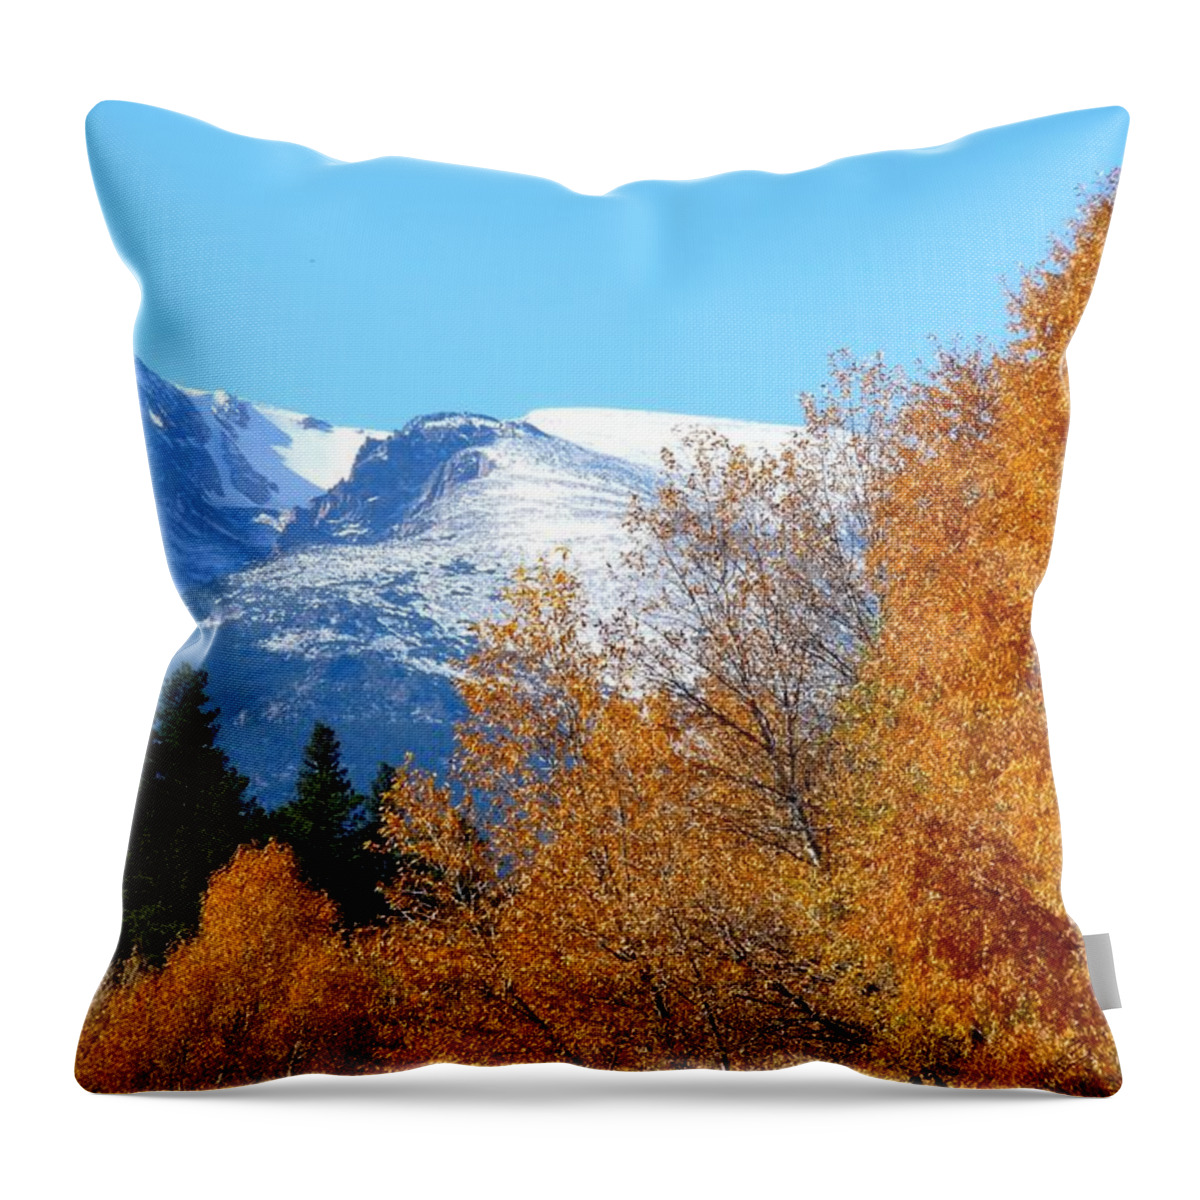 Colorado Throw Pillow featuring the photograph Colorado Mountains in Autumn by Marilyn Burton